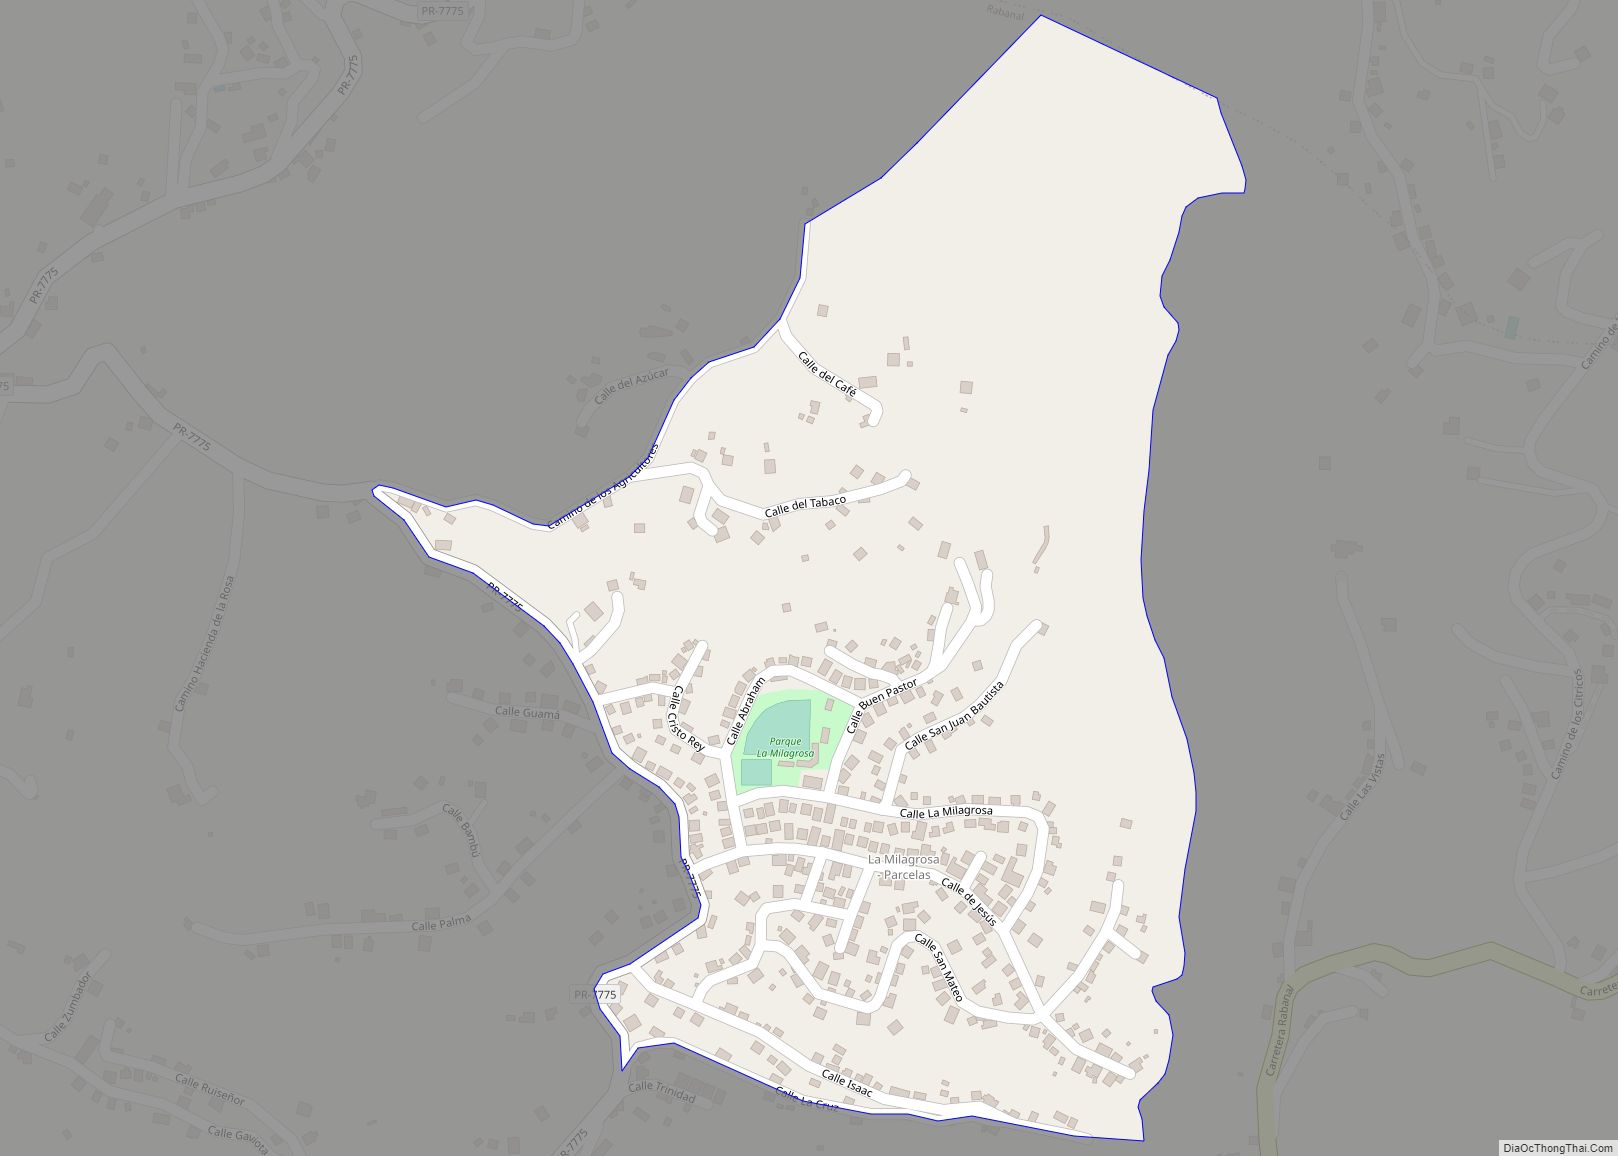 Map of Parcelas La Milagrosa comunidad